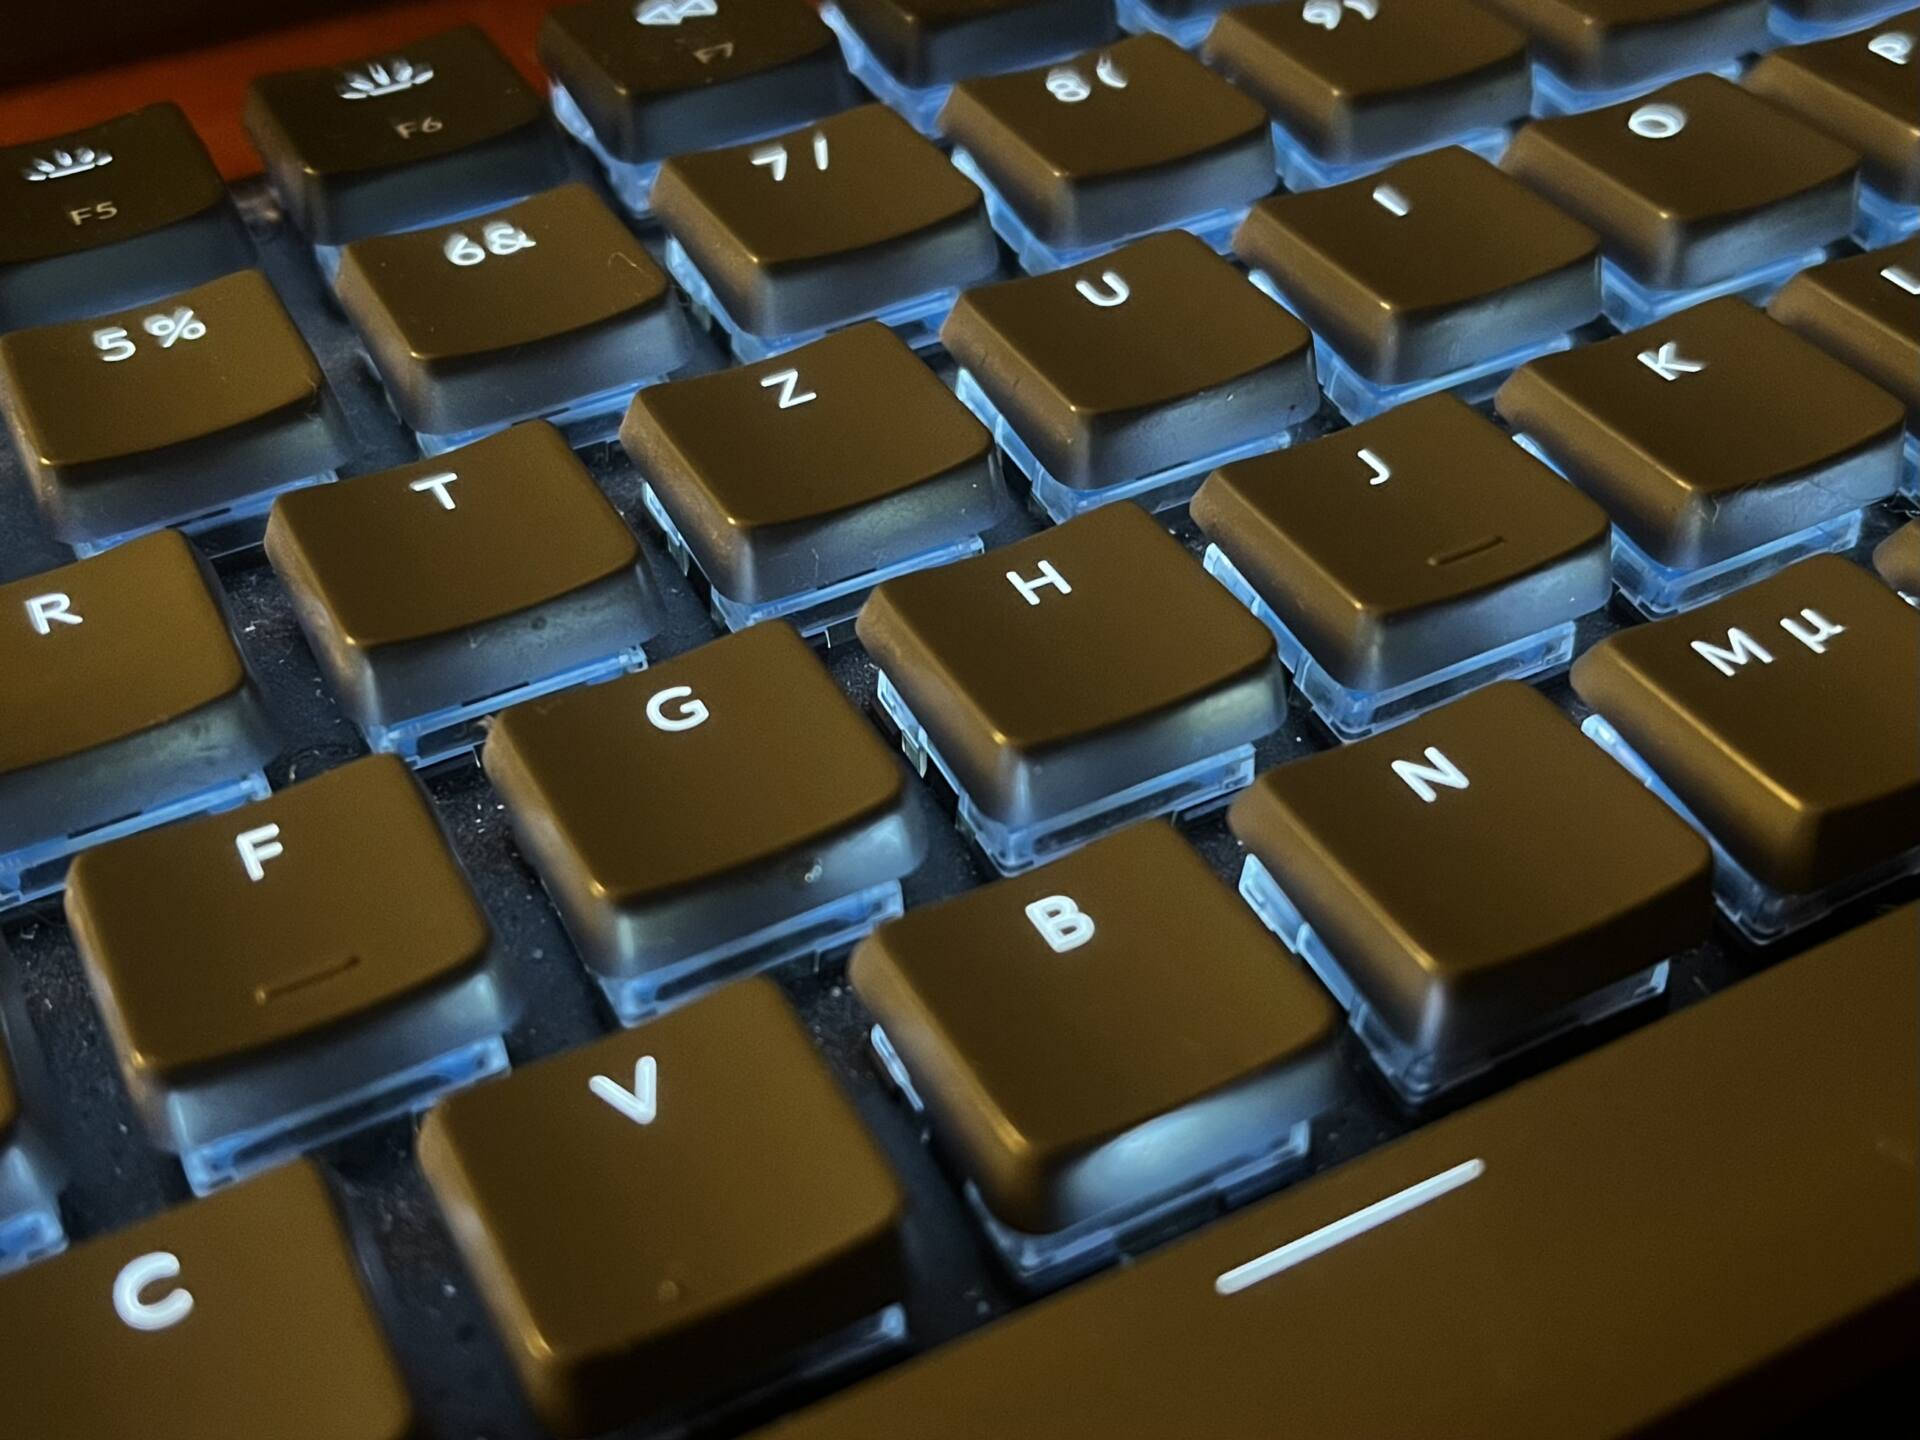 Blue Back Lit Computer Keyboard Background